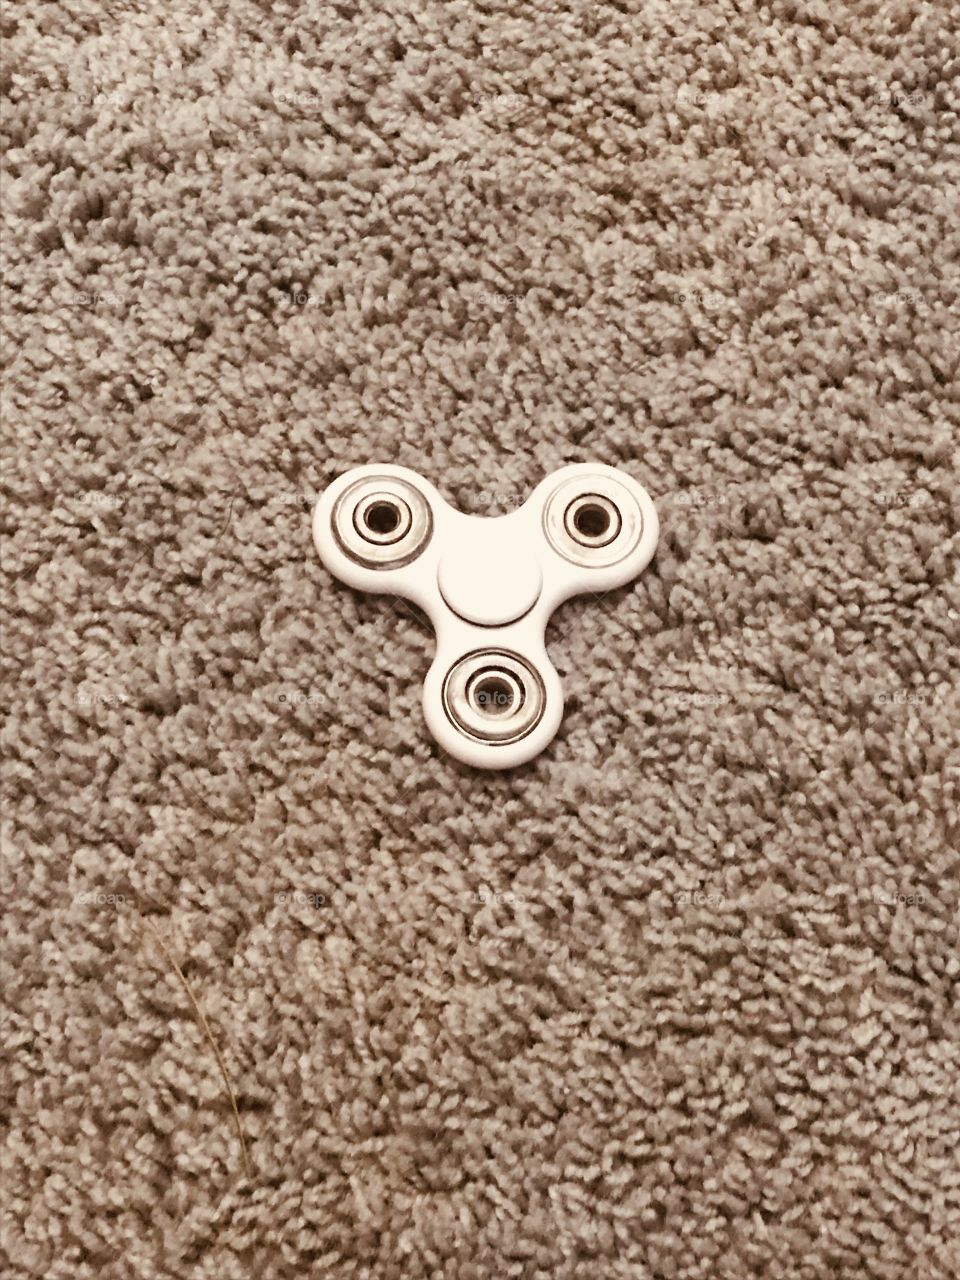 Figured spinner on the carpet